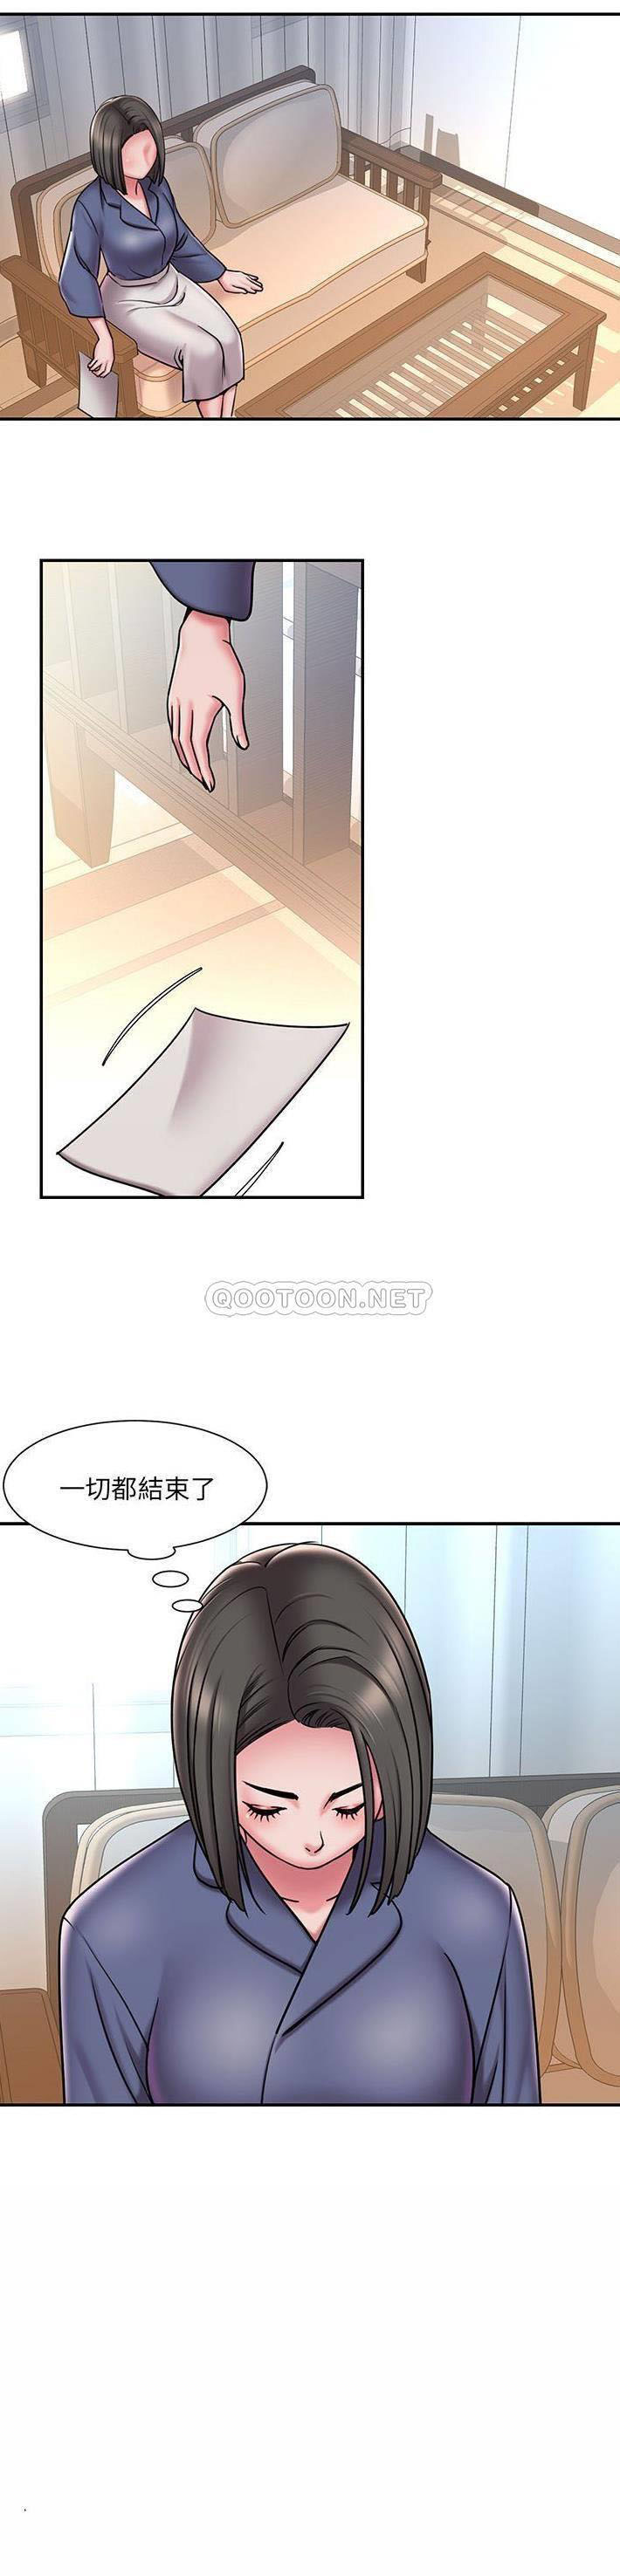 韩国污漫画 被拋棄的男人(男孩沒人愛) 第43话 2